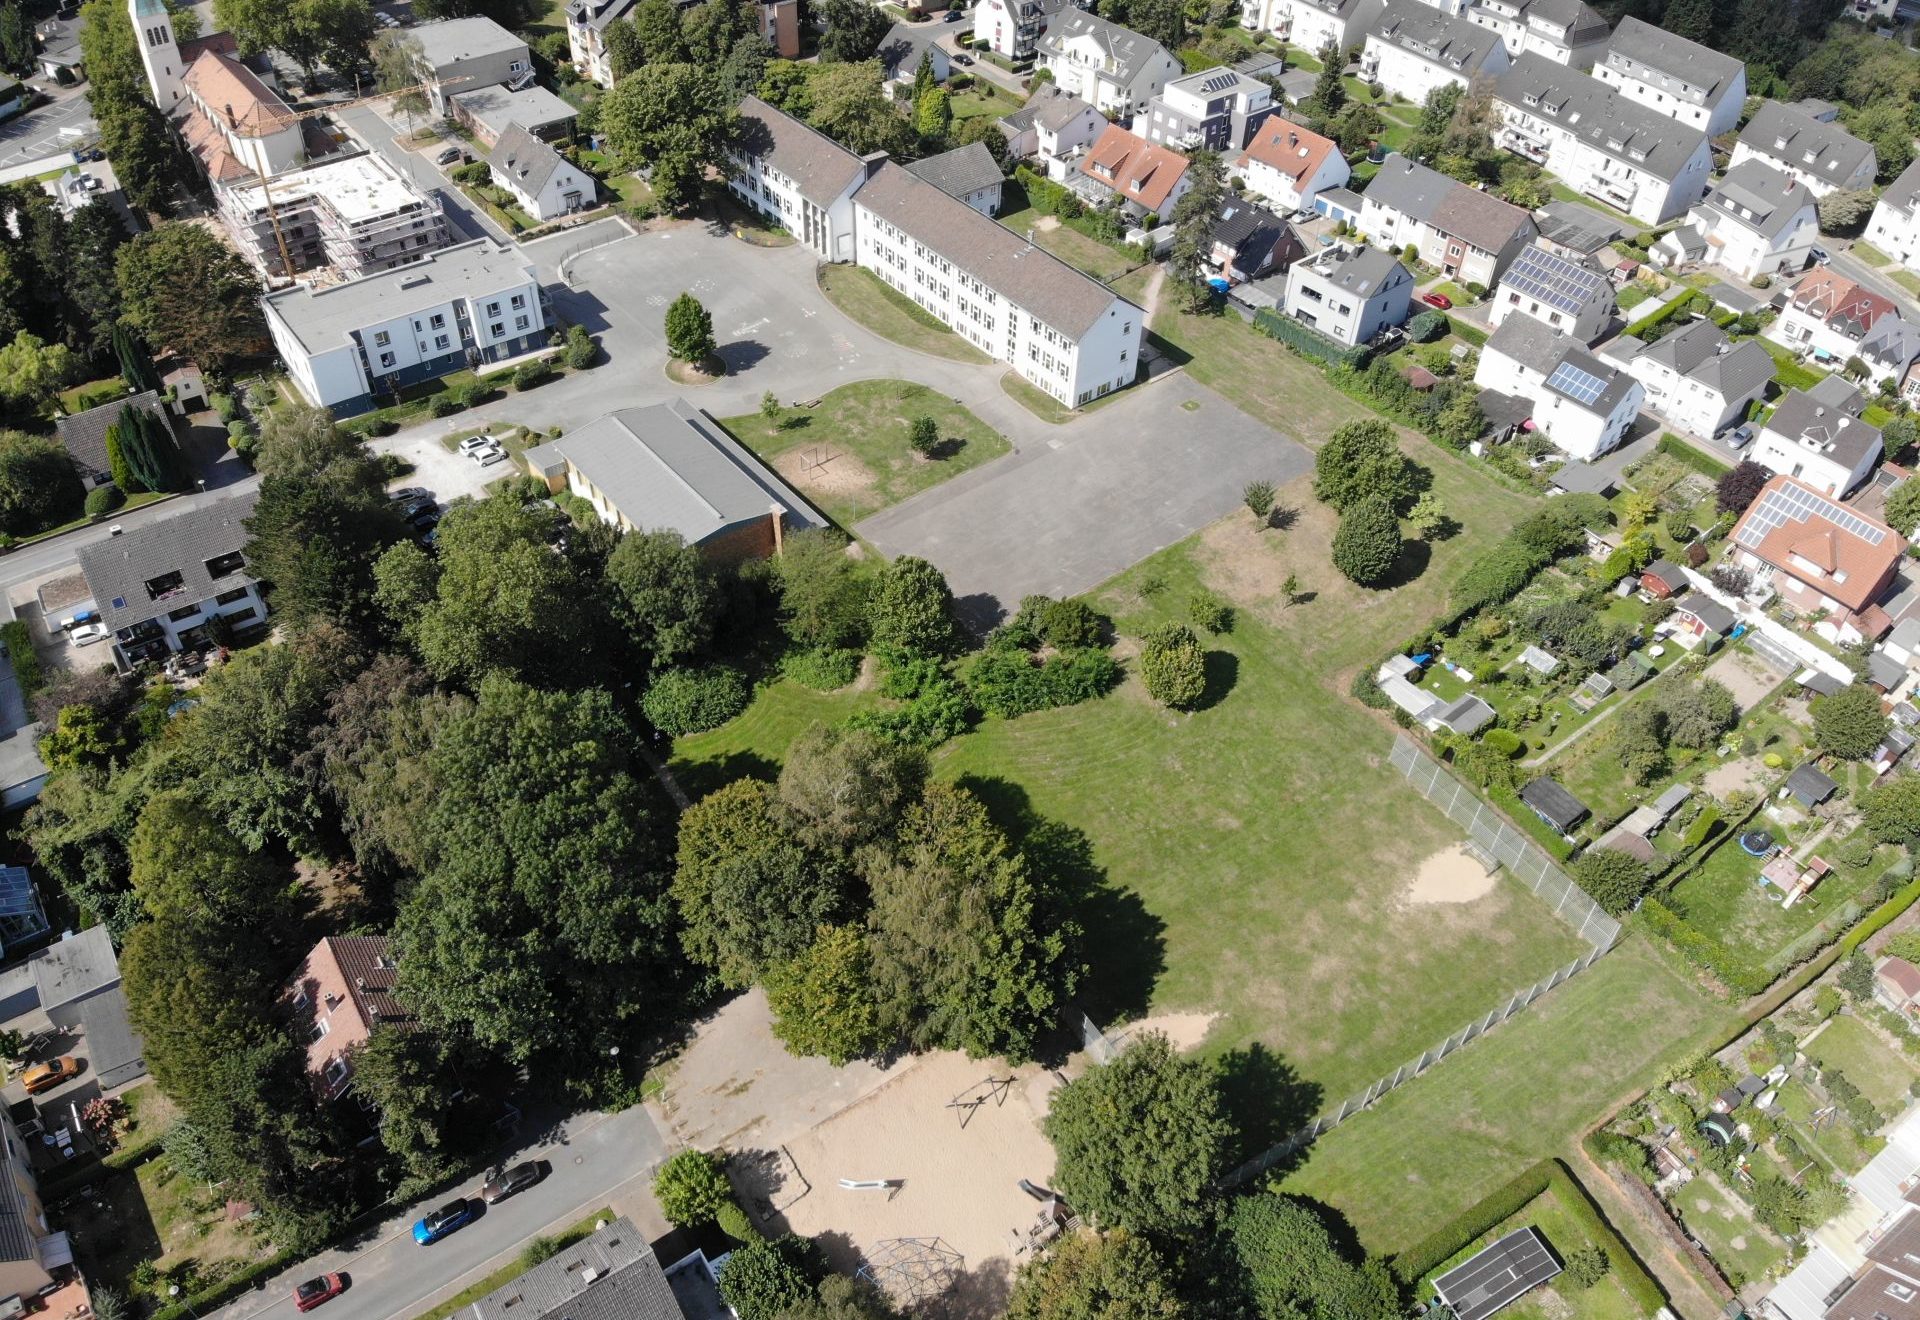 Der Schulhof der Grundschule Laer, der Bolzplatz und der Spielplatz sollen neu gestaltet und ein Treffpunkt für die Laerschen werden.